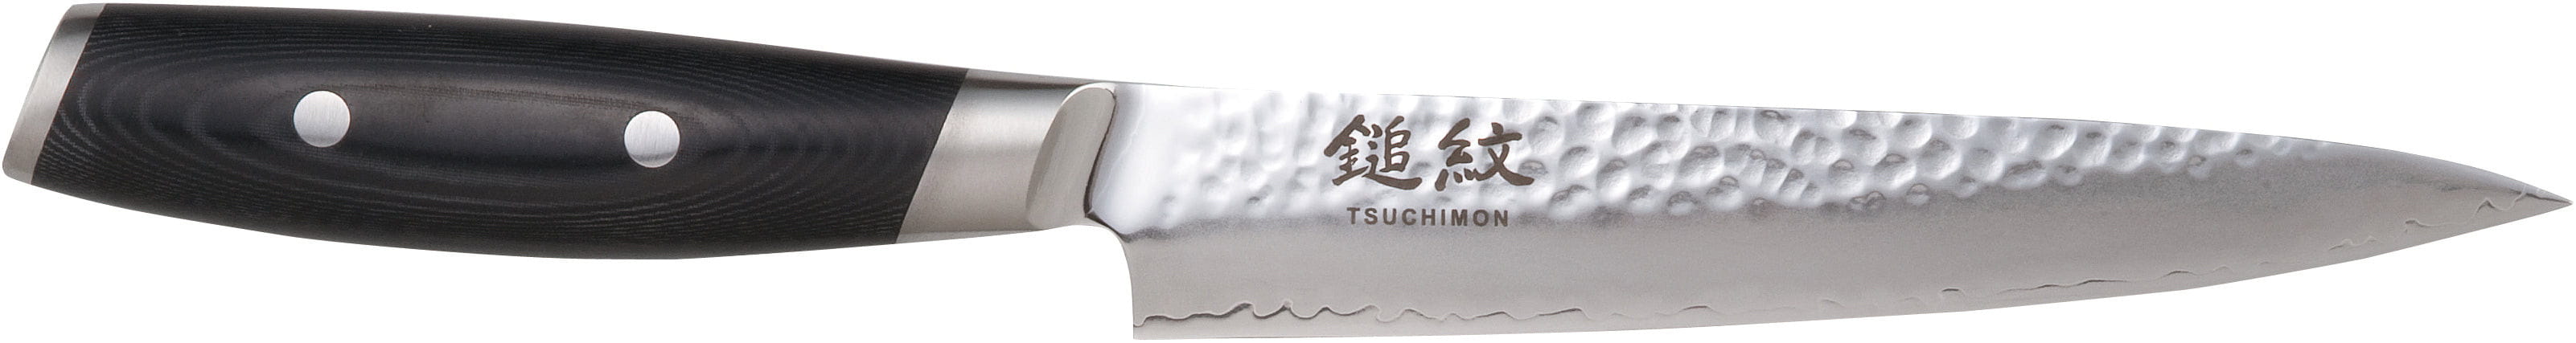 Coltello da intaglio Yaxell Tsuchimon, 18 cm